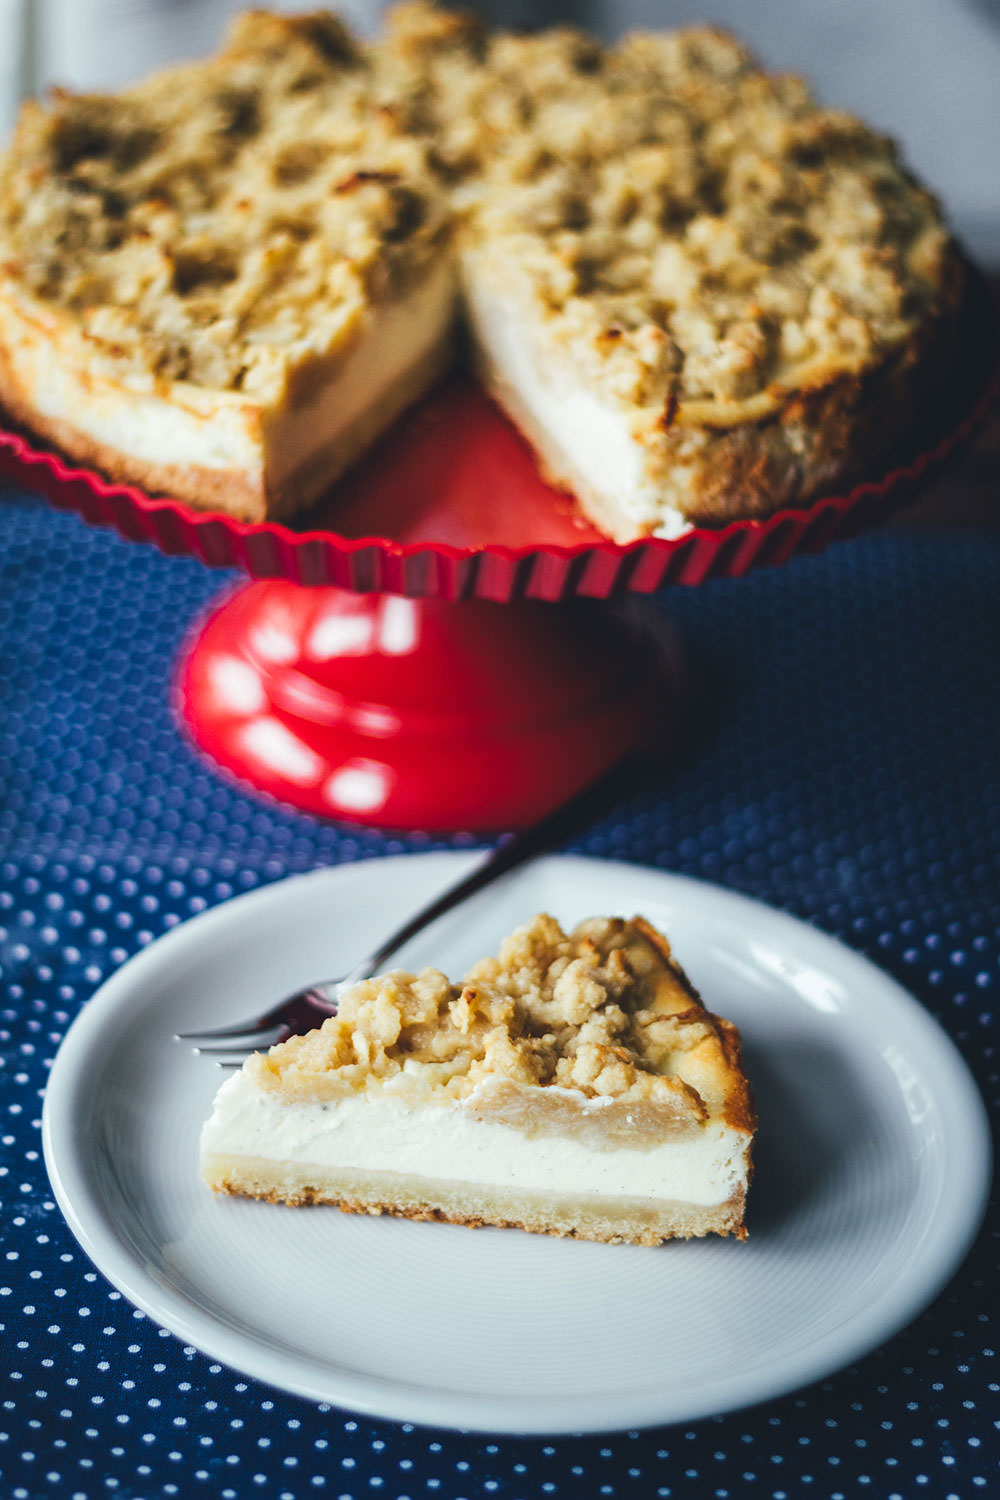 Rezept für saftigen Vanille-Cheesecake mit buttrigen Apfel-Streuseln | der perfekte Apfelkuchen für den Herbst und Winter | moeyskitchen.com #apfelkuchen #äpfel #kuchen #backen #foodblogger #rezepte #cheesecake #käsekuchen #streuselkuchen